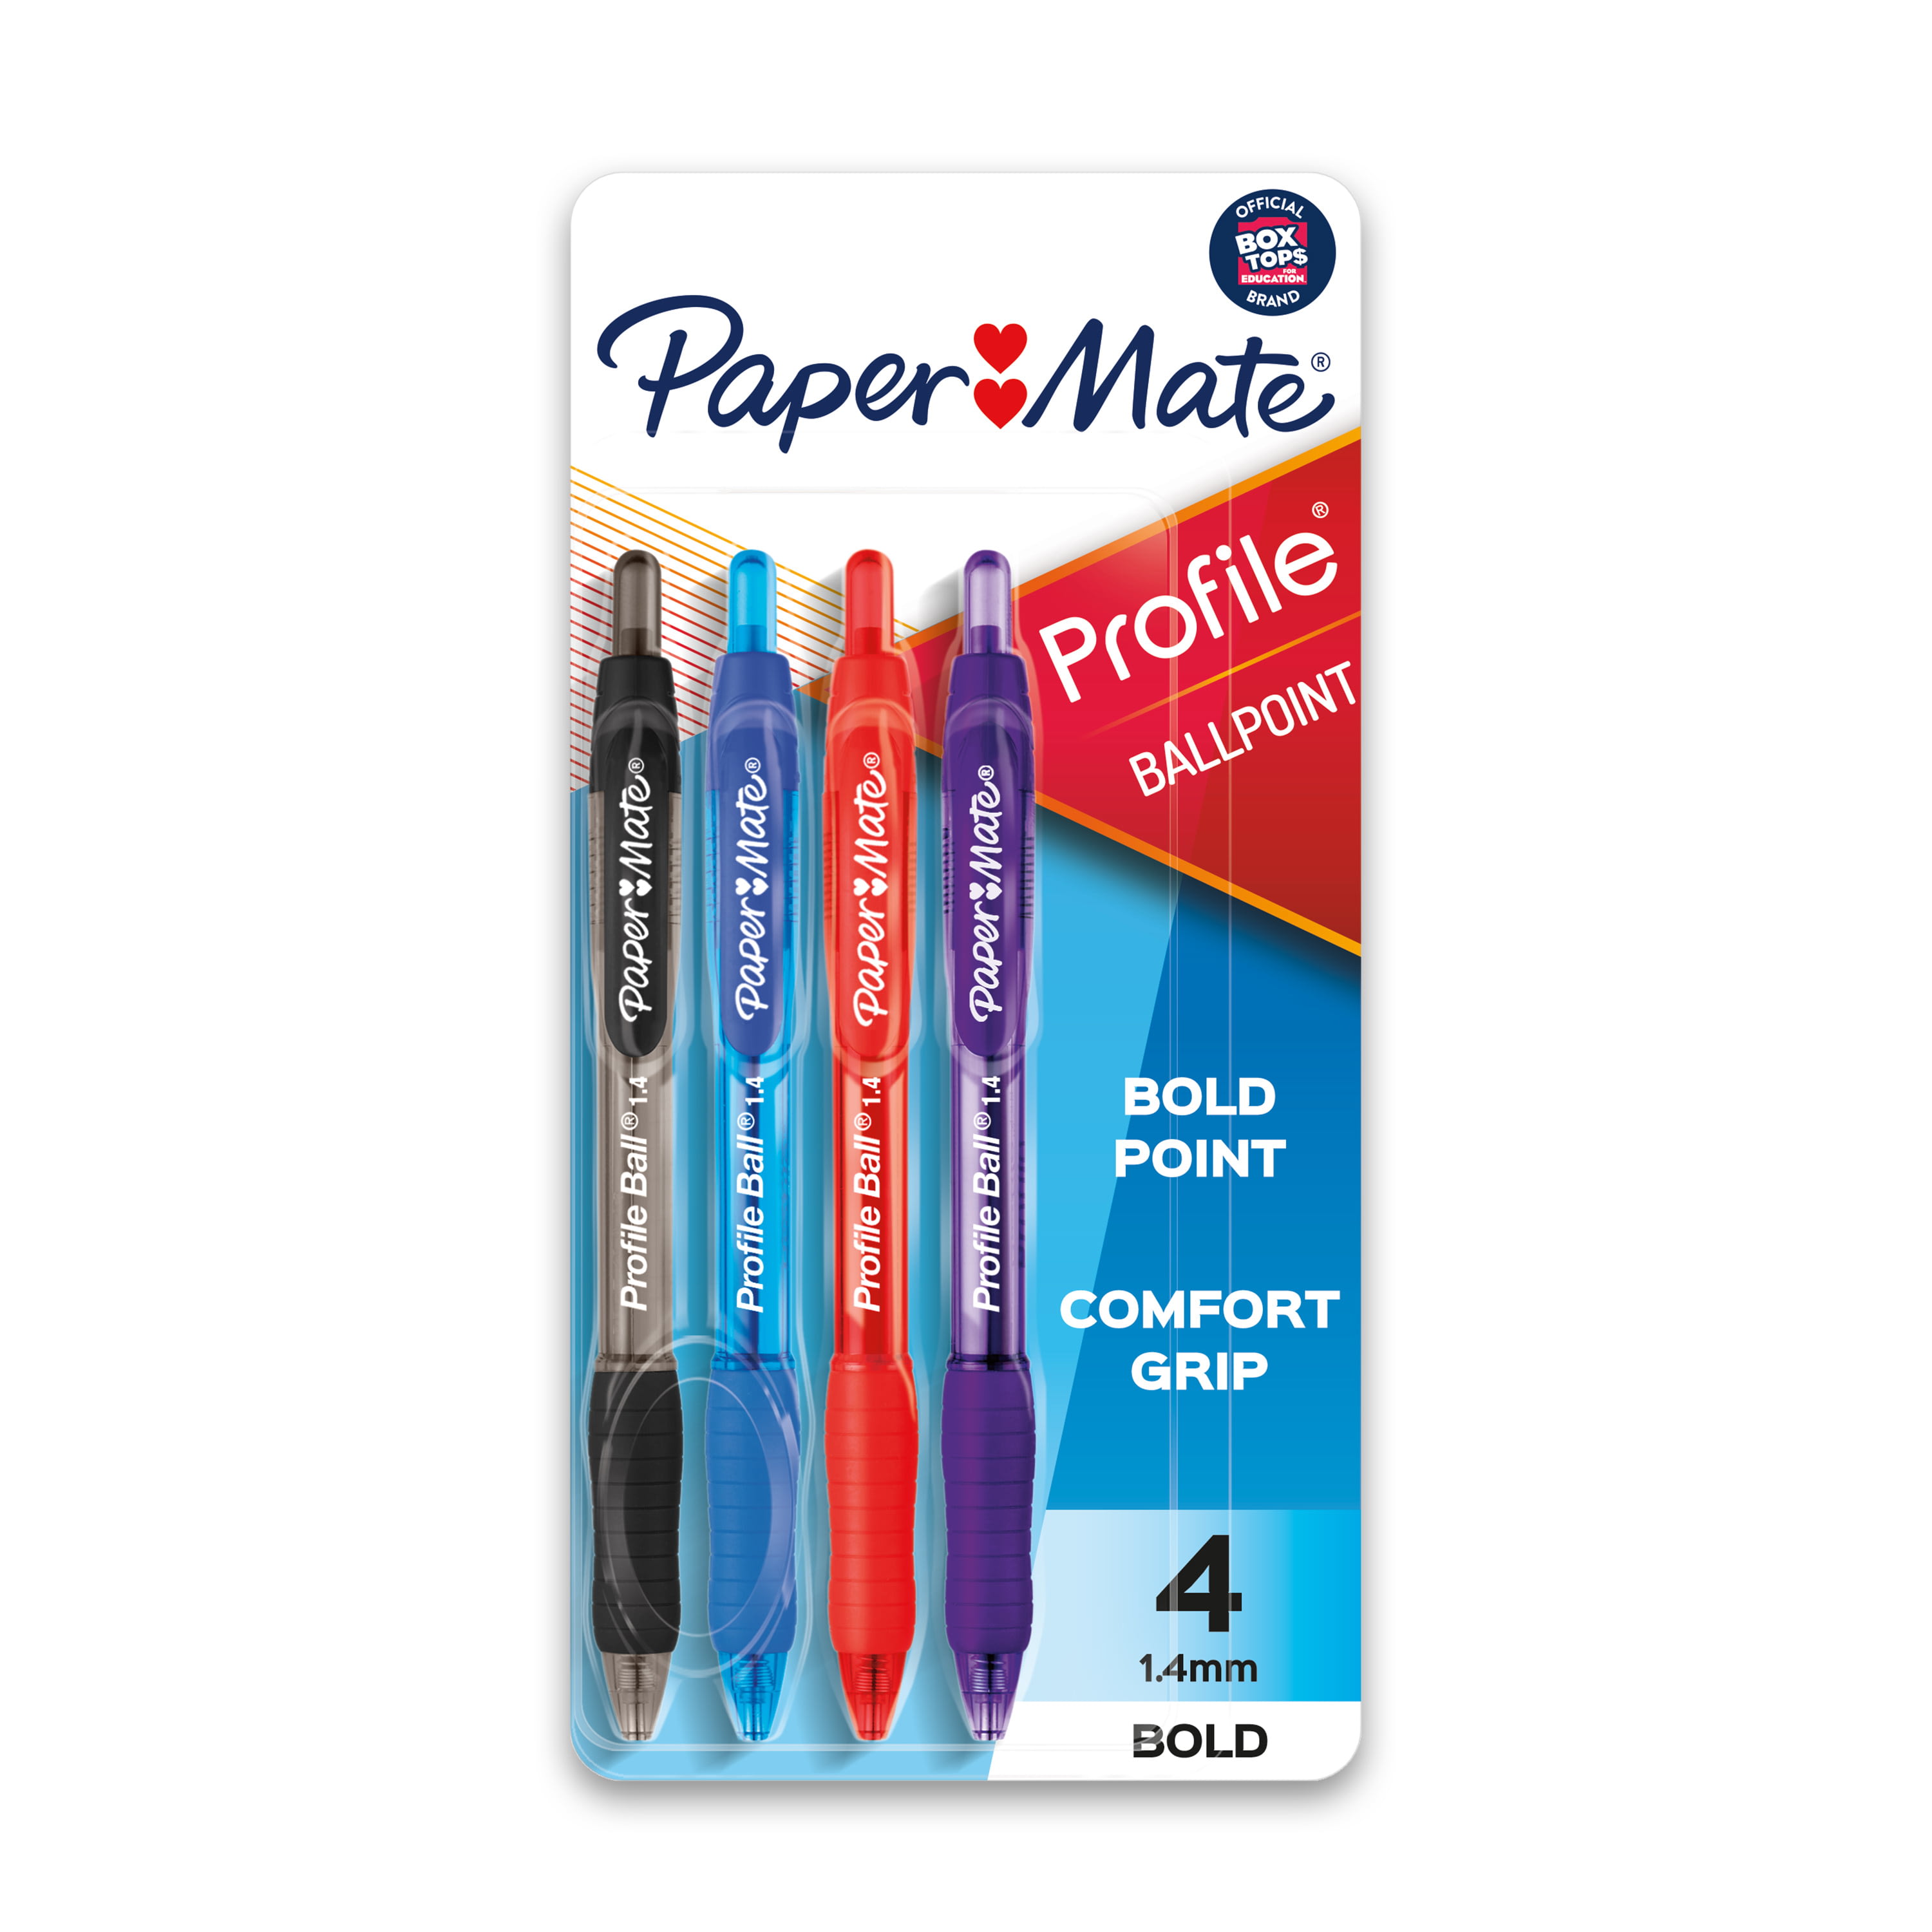 Sharpie Pens, Felt Tip Pens, Fine Point (0.4mm), Assorted Colors, 6 Count 